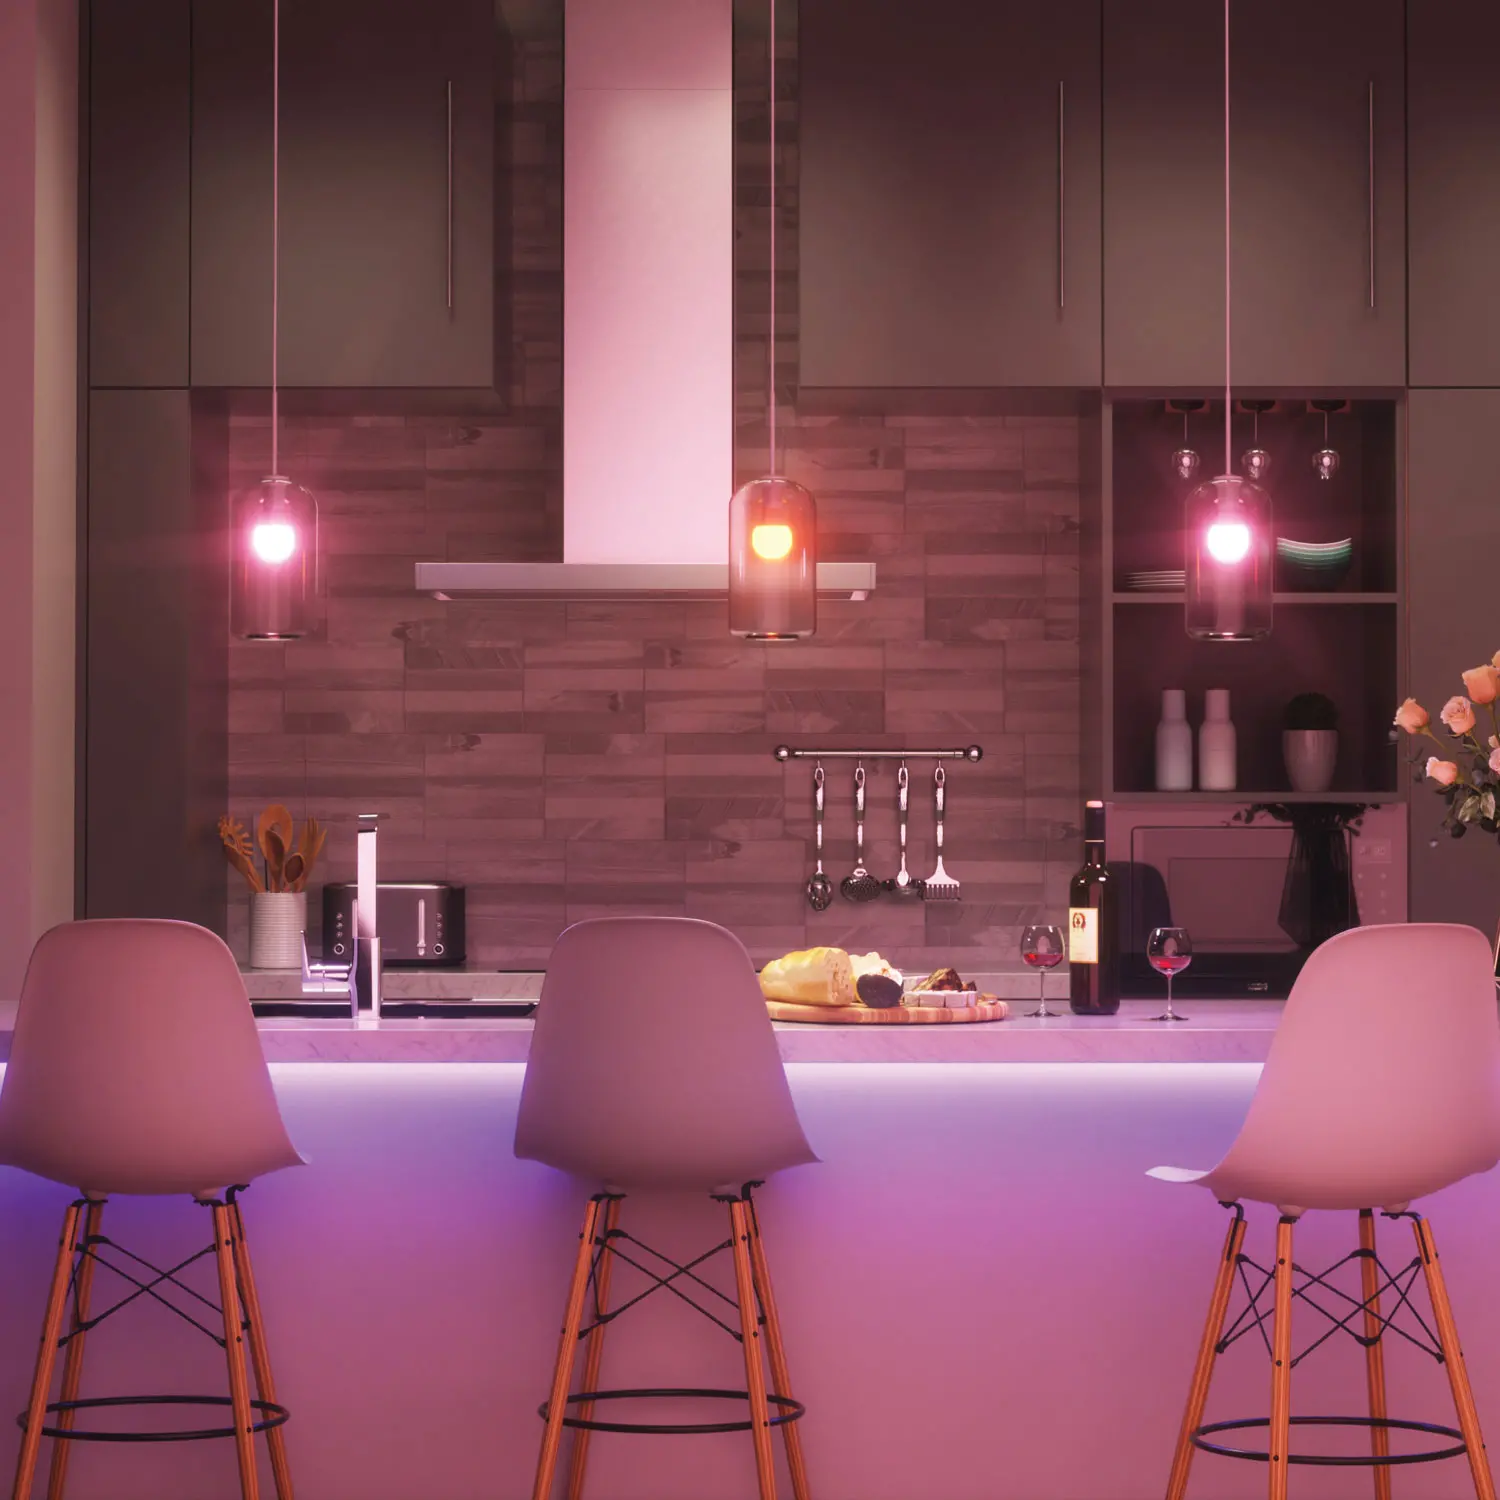 Smart lights in kitchen